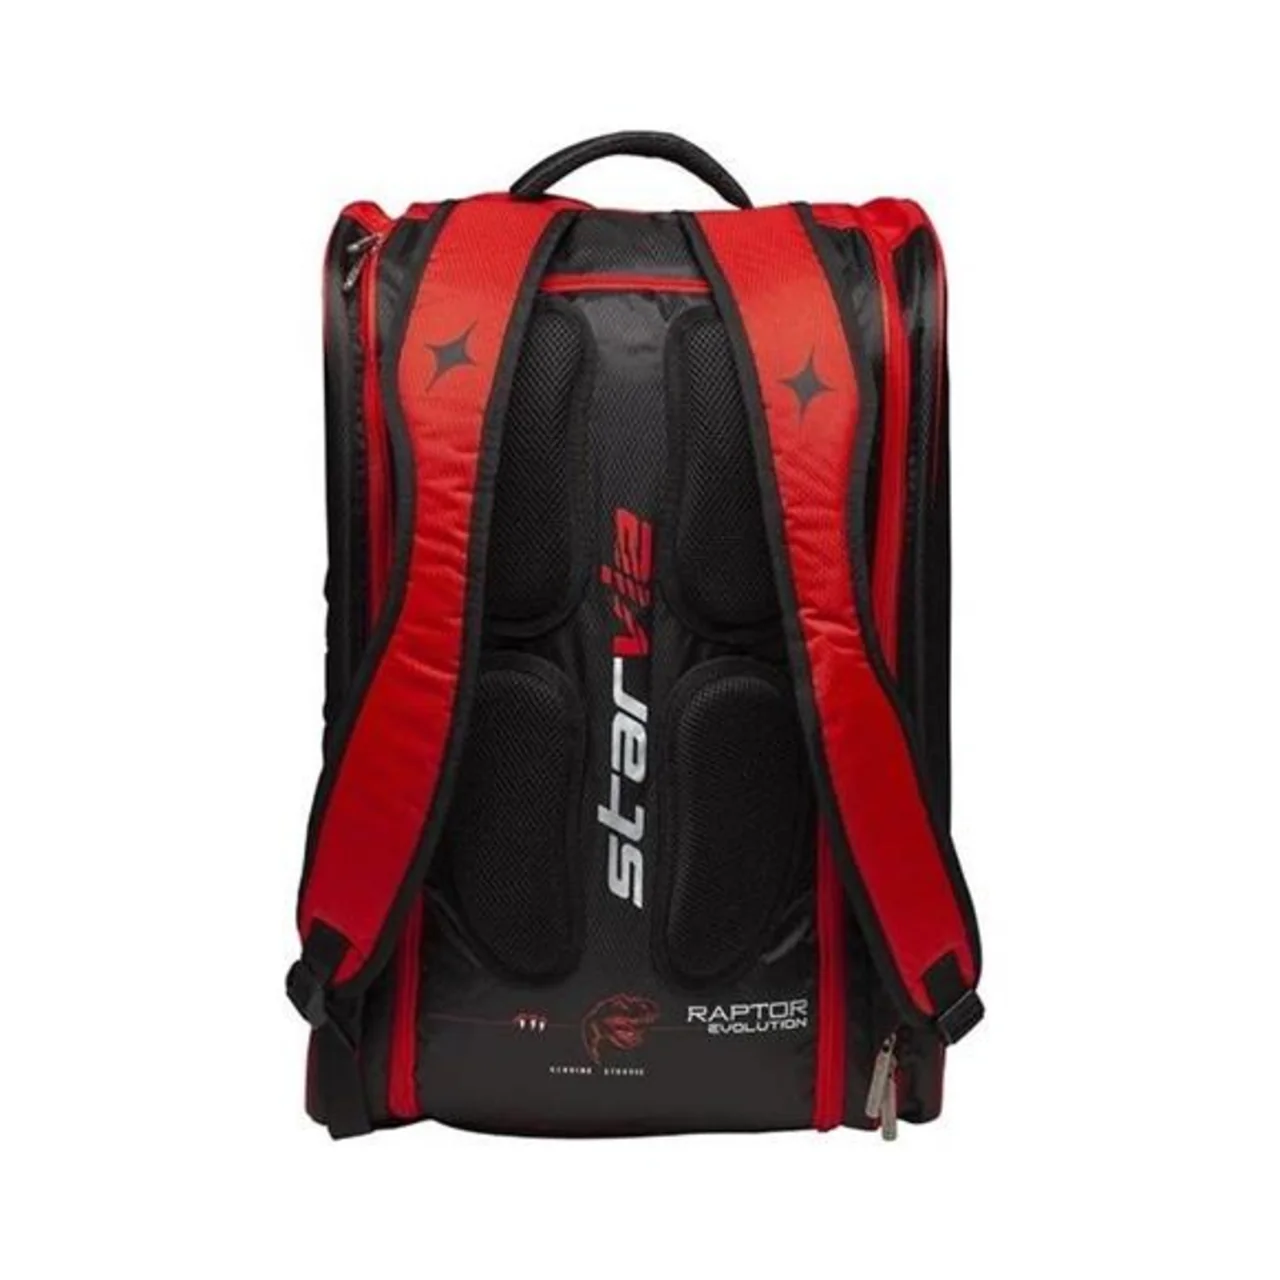 StarVie Evo Padel Bag Pro Black/Red